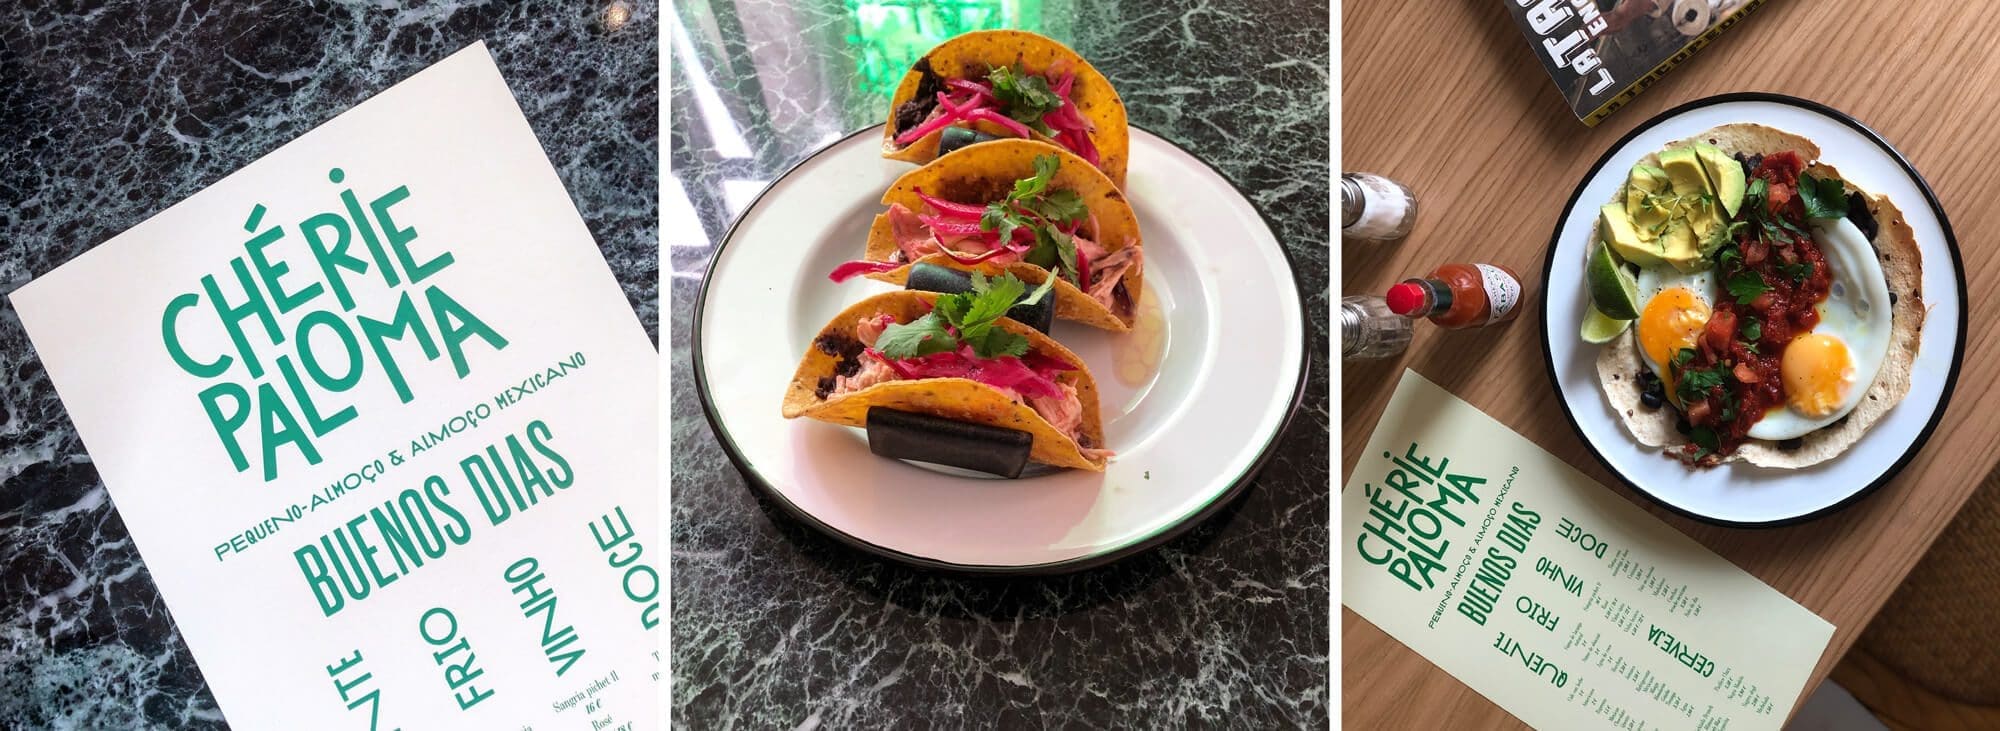 trois images du menu dessiné par ichetkar et des plats du resto Mexicain Chérie Paloma